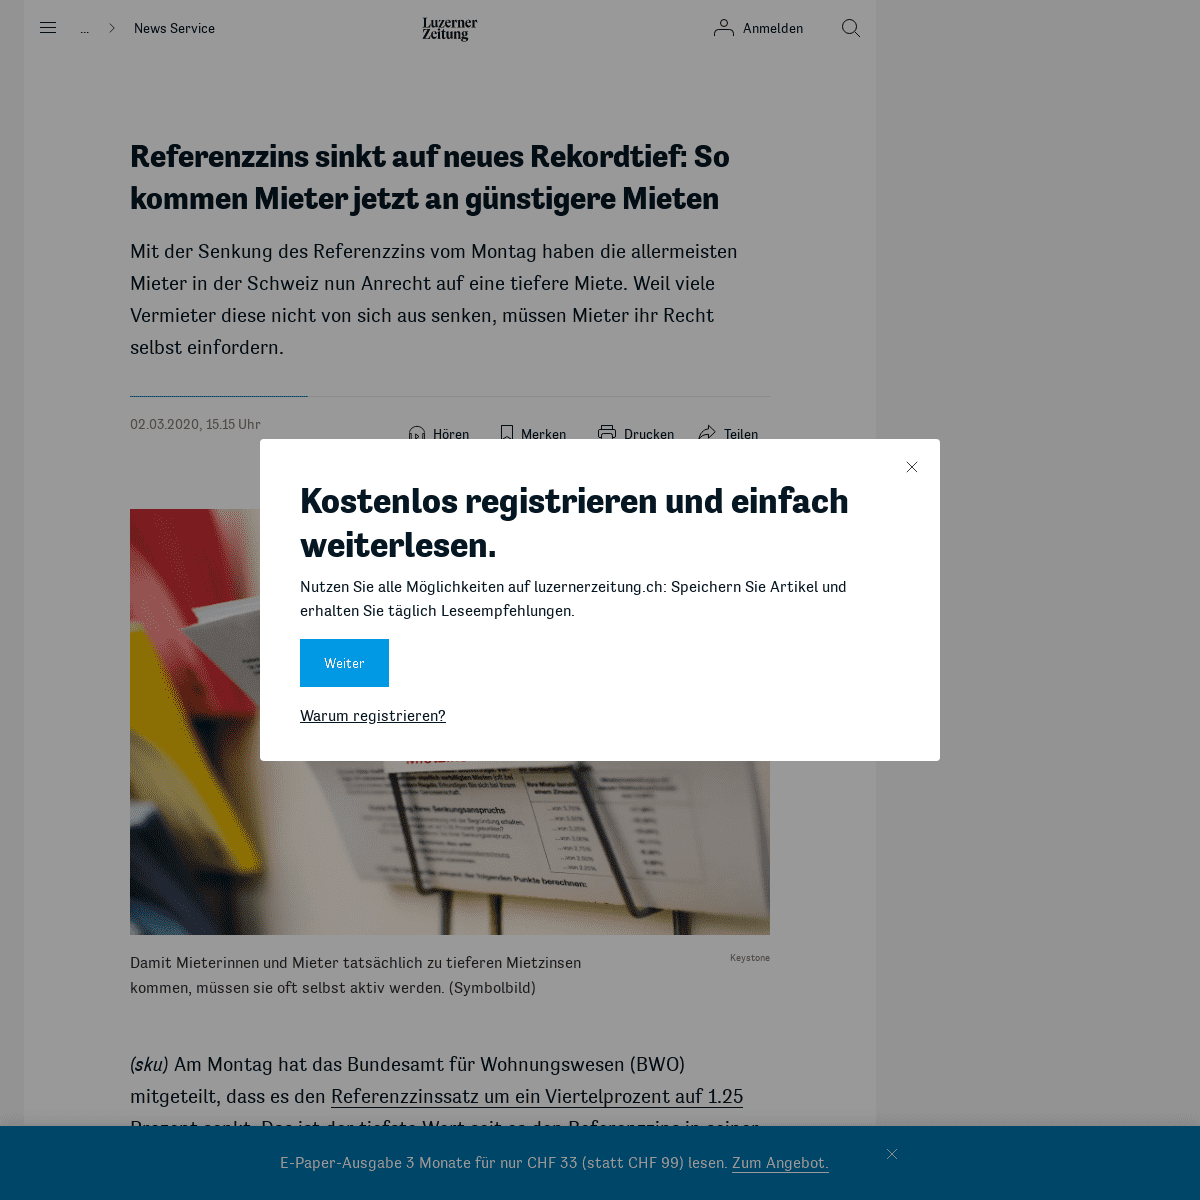 A complete backup of www.luzernerzeitung.ch/news-service/wirtschaft/referenzsinssatz-erreicht-rekordtief-so-senken-sie-jetzt-die